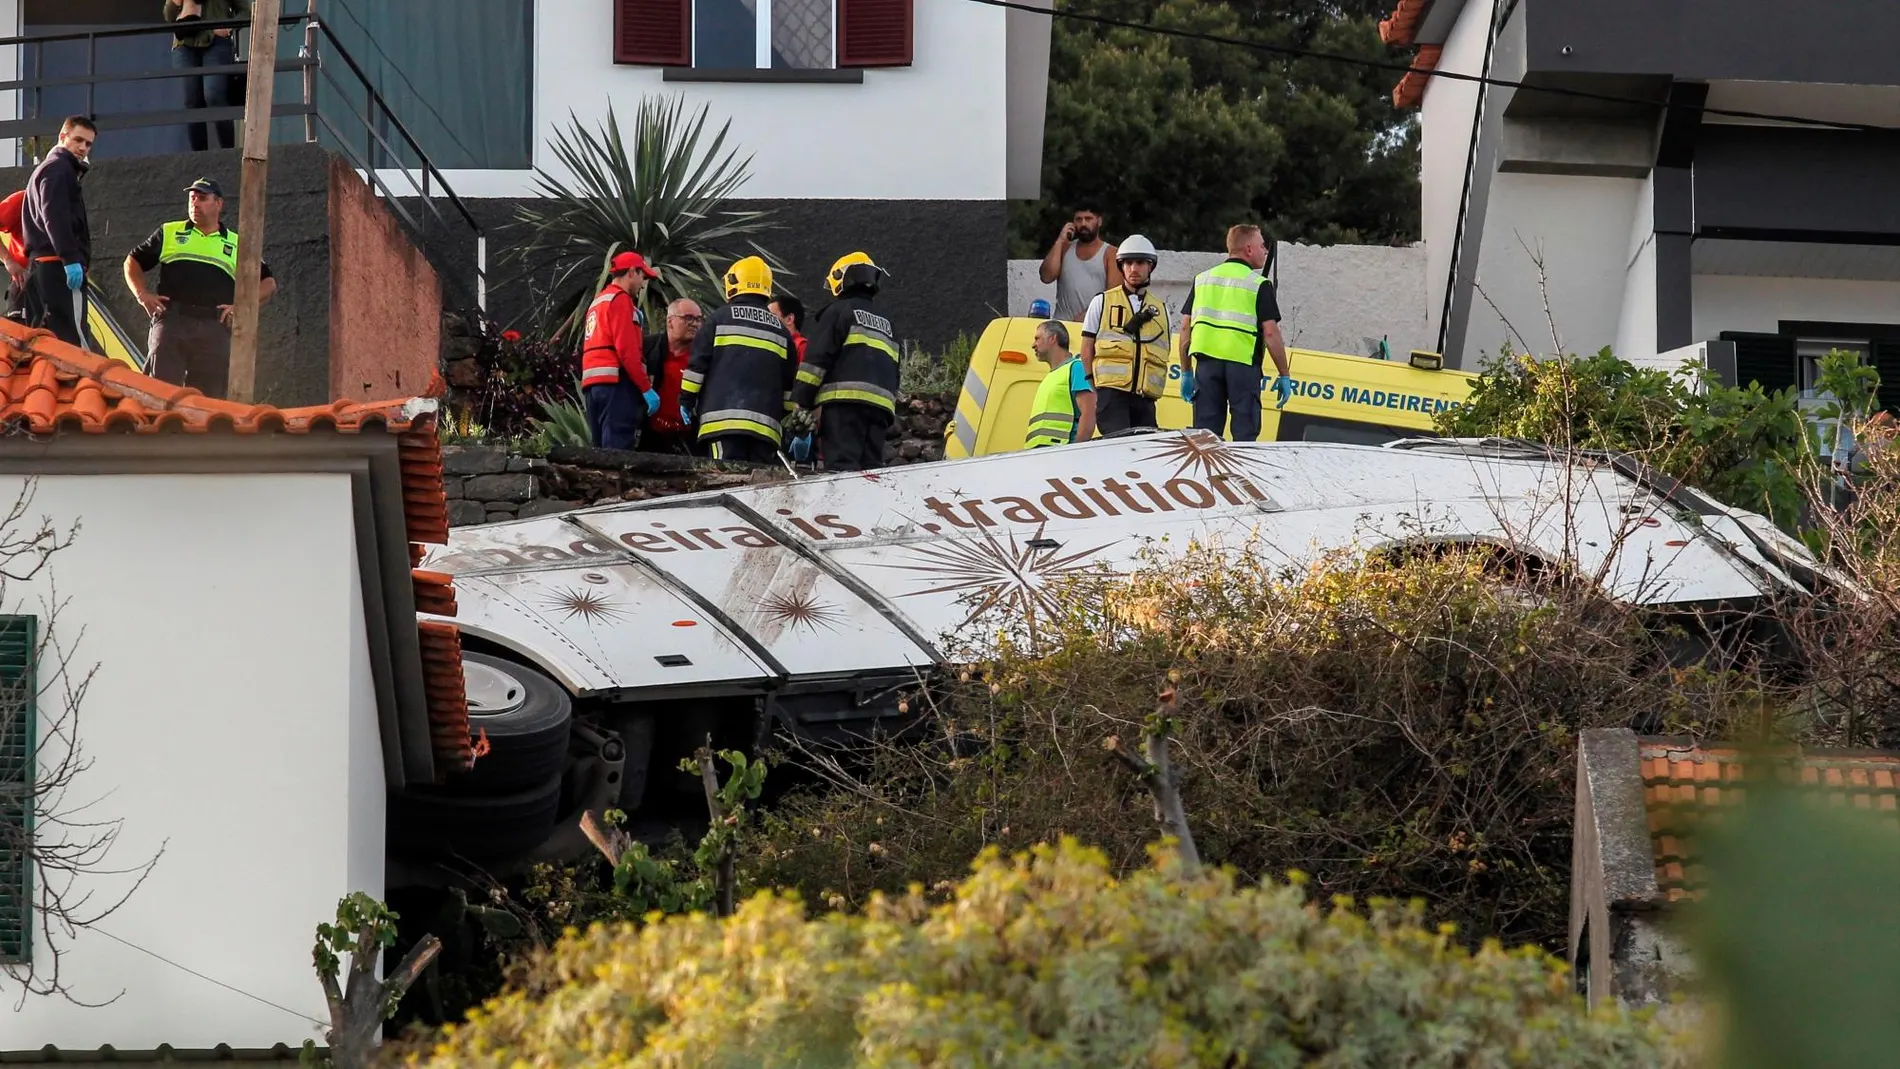 Rescatistas inspeccionan el sitio de un accidente de donde chocó un autobús de turismo este miércoles en Canico, Santa Cruz, isla Madeira (Portugal)